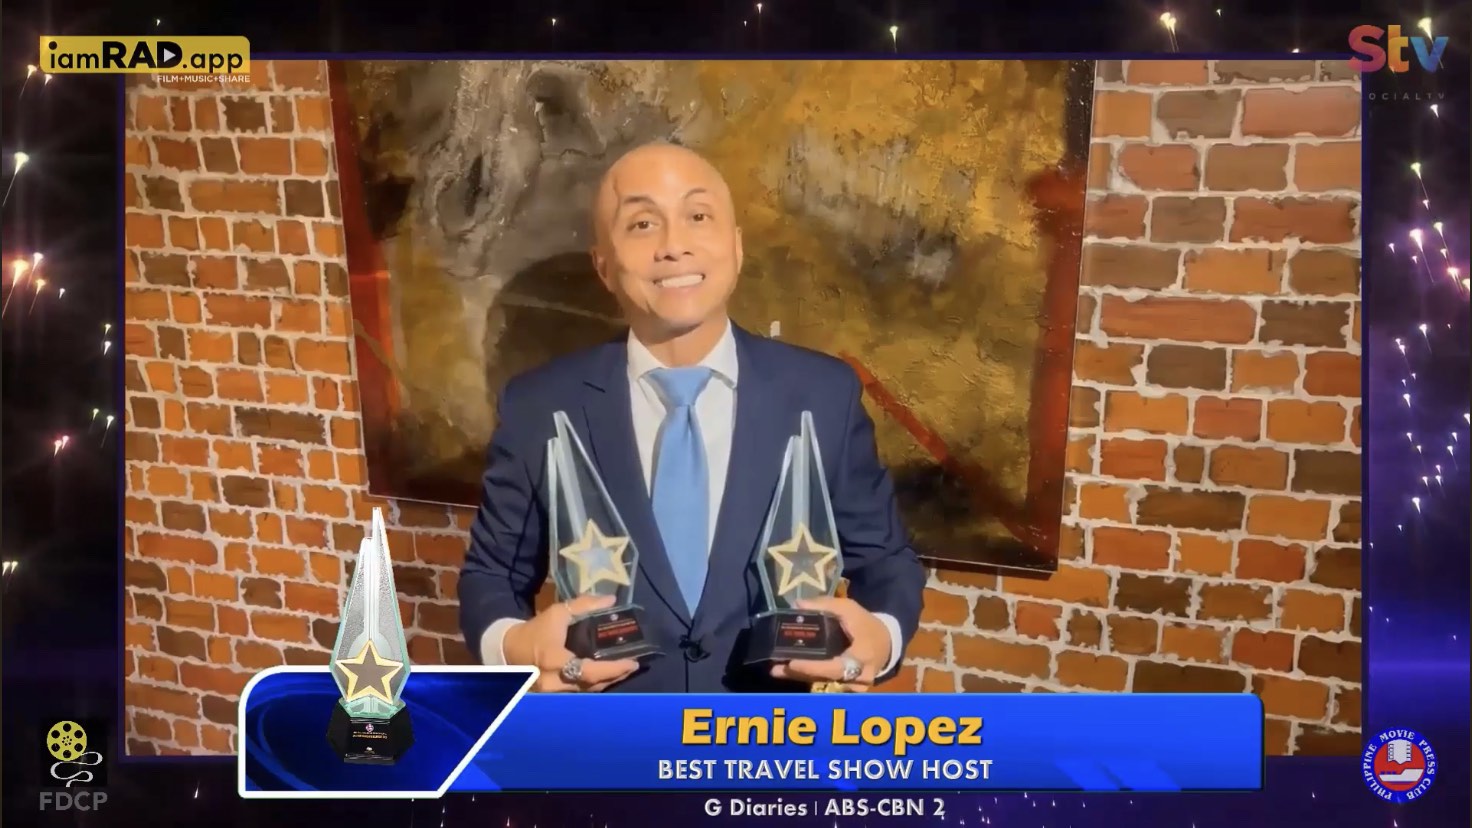 Ernie Lopez   Best Travel Show Host, G Diaries